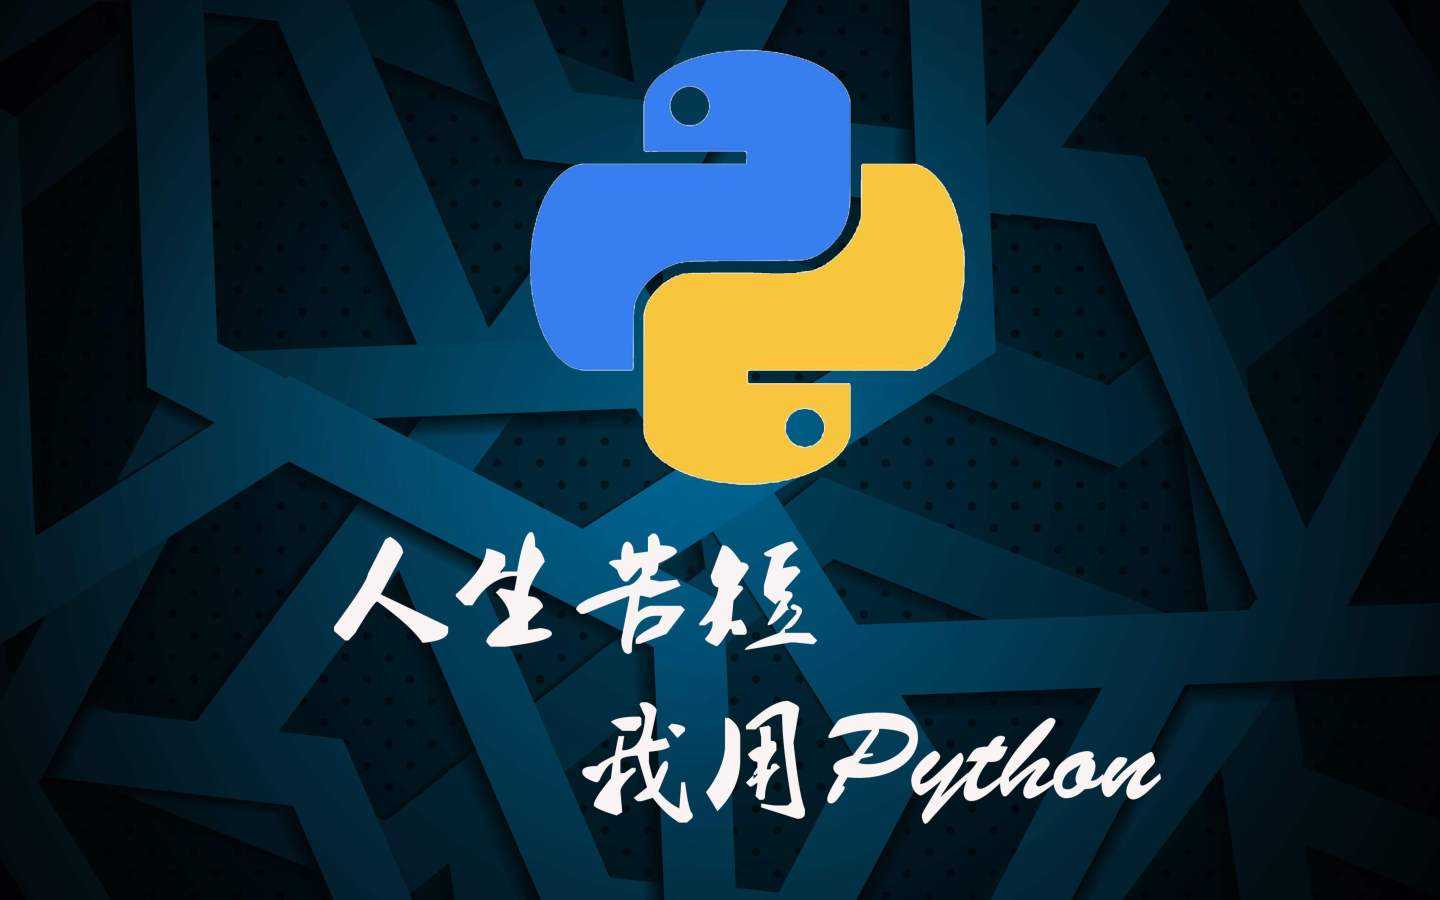 金蝶云社区Python小插件(金蝶云星空)开发教程，持续更新中...